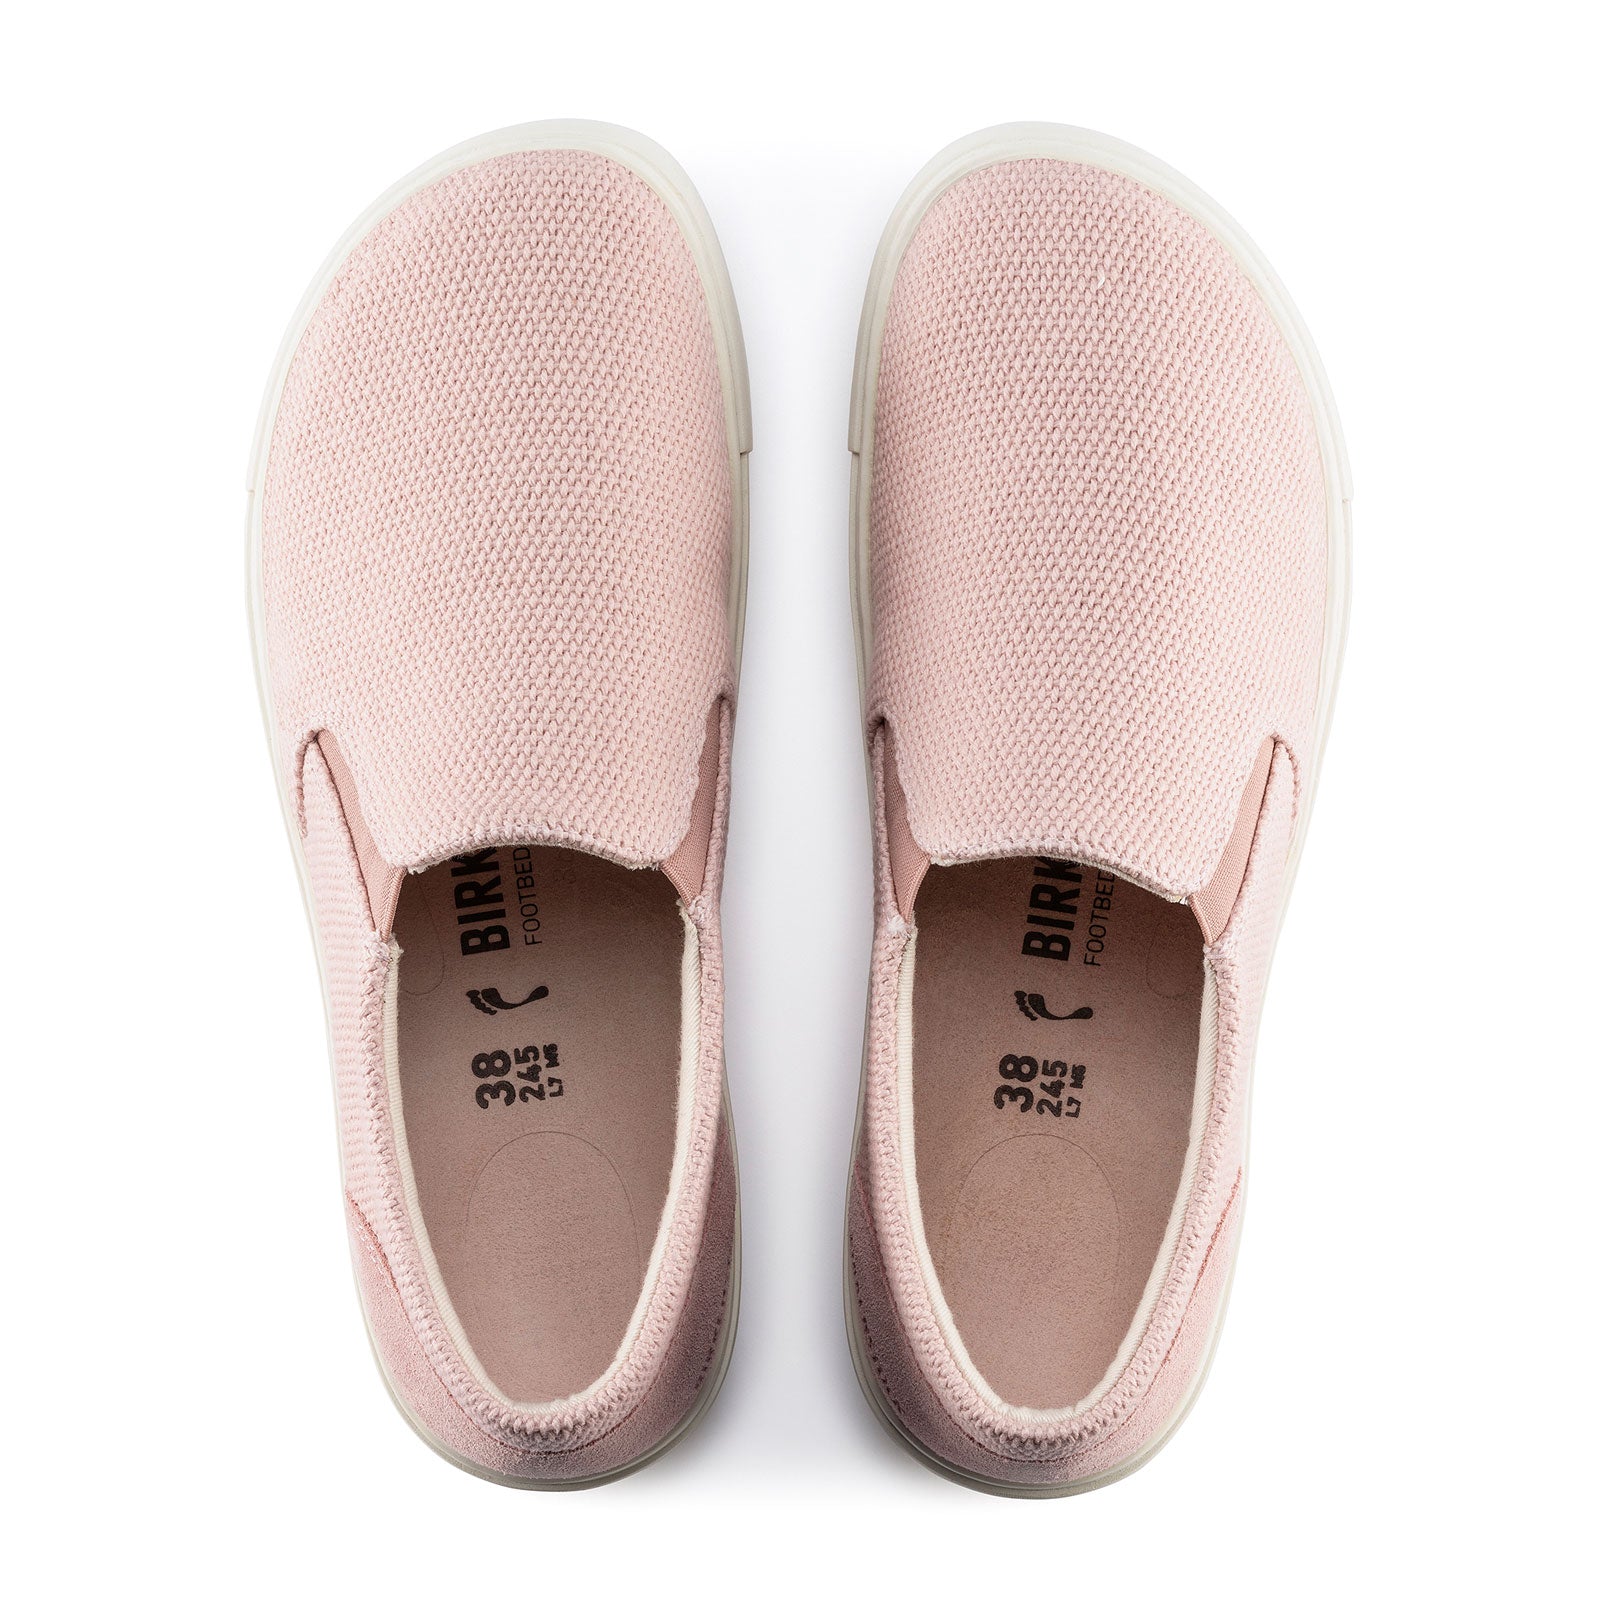 Birkenstock Oswego Narrow Slip On Sneaker (Women) - Soft Pink Canvas Dress-Casual - Slip Ons - The Heel Shoe Fitters